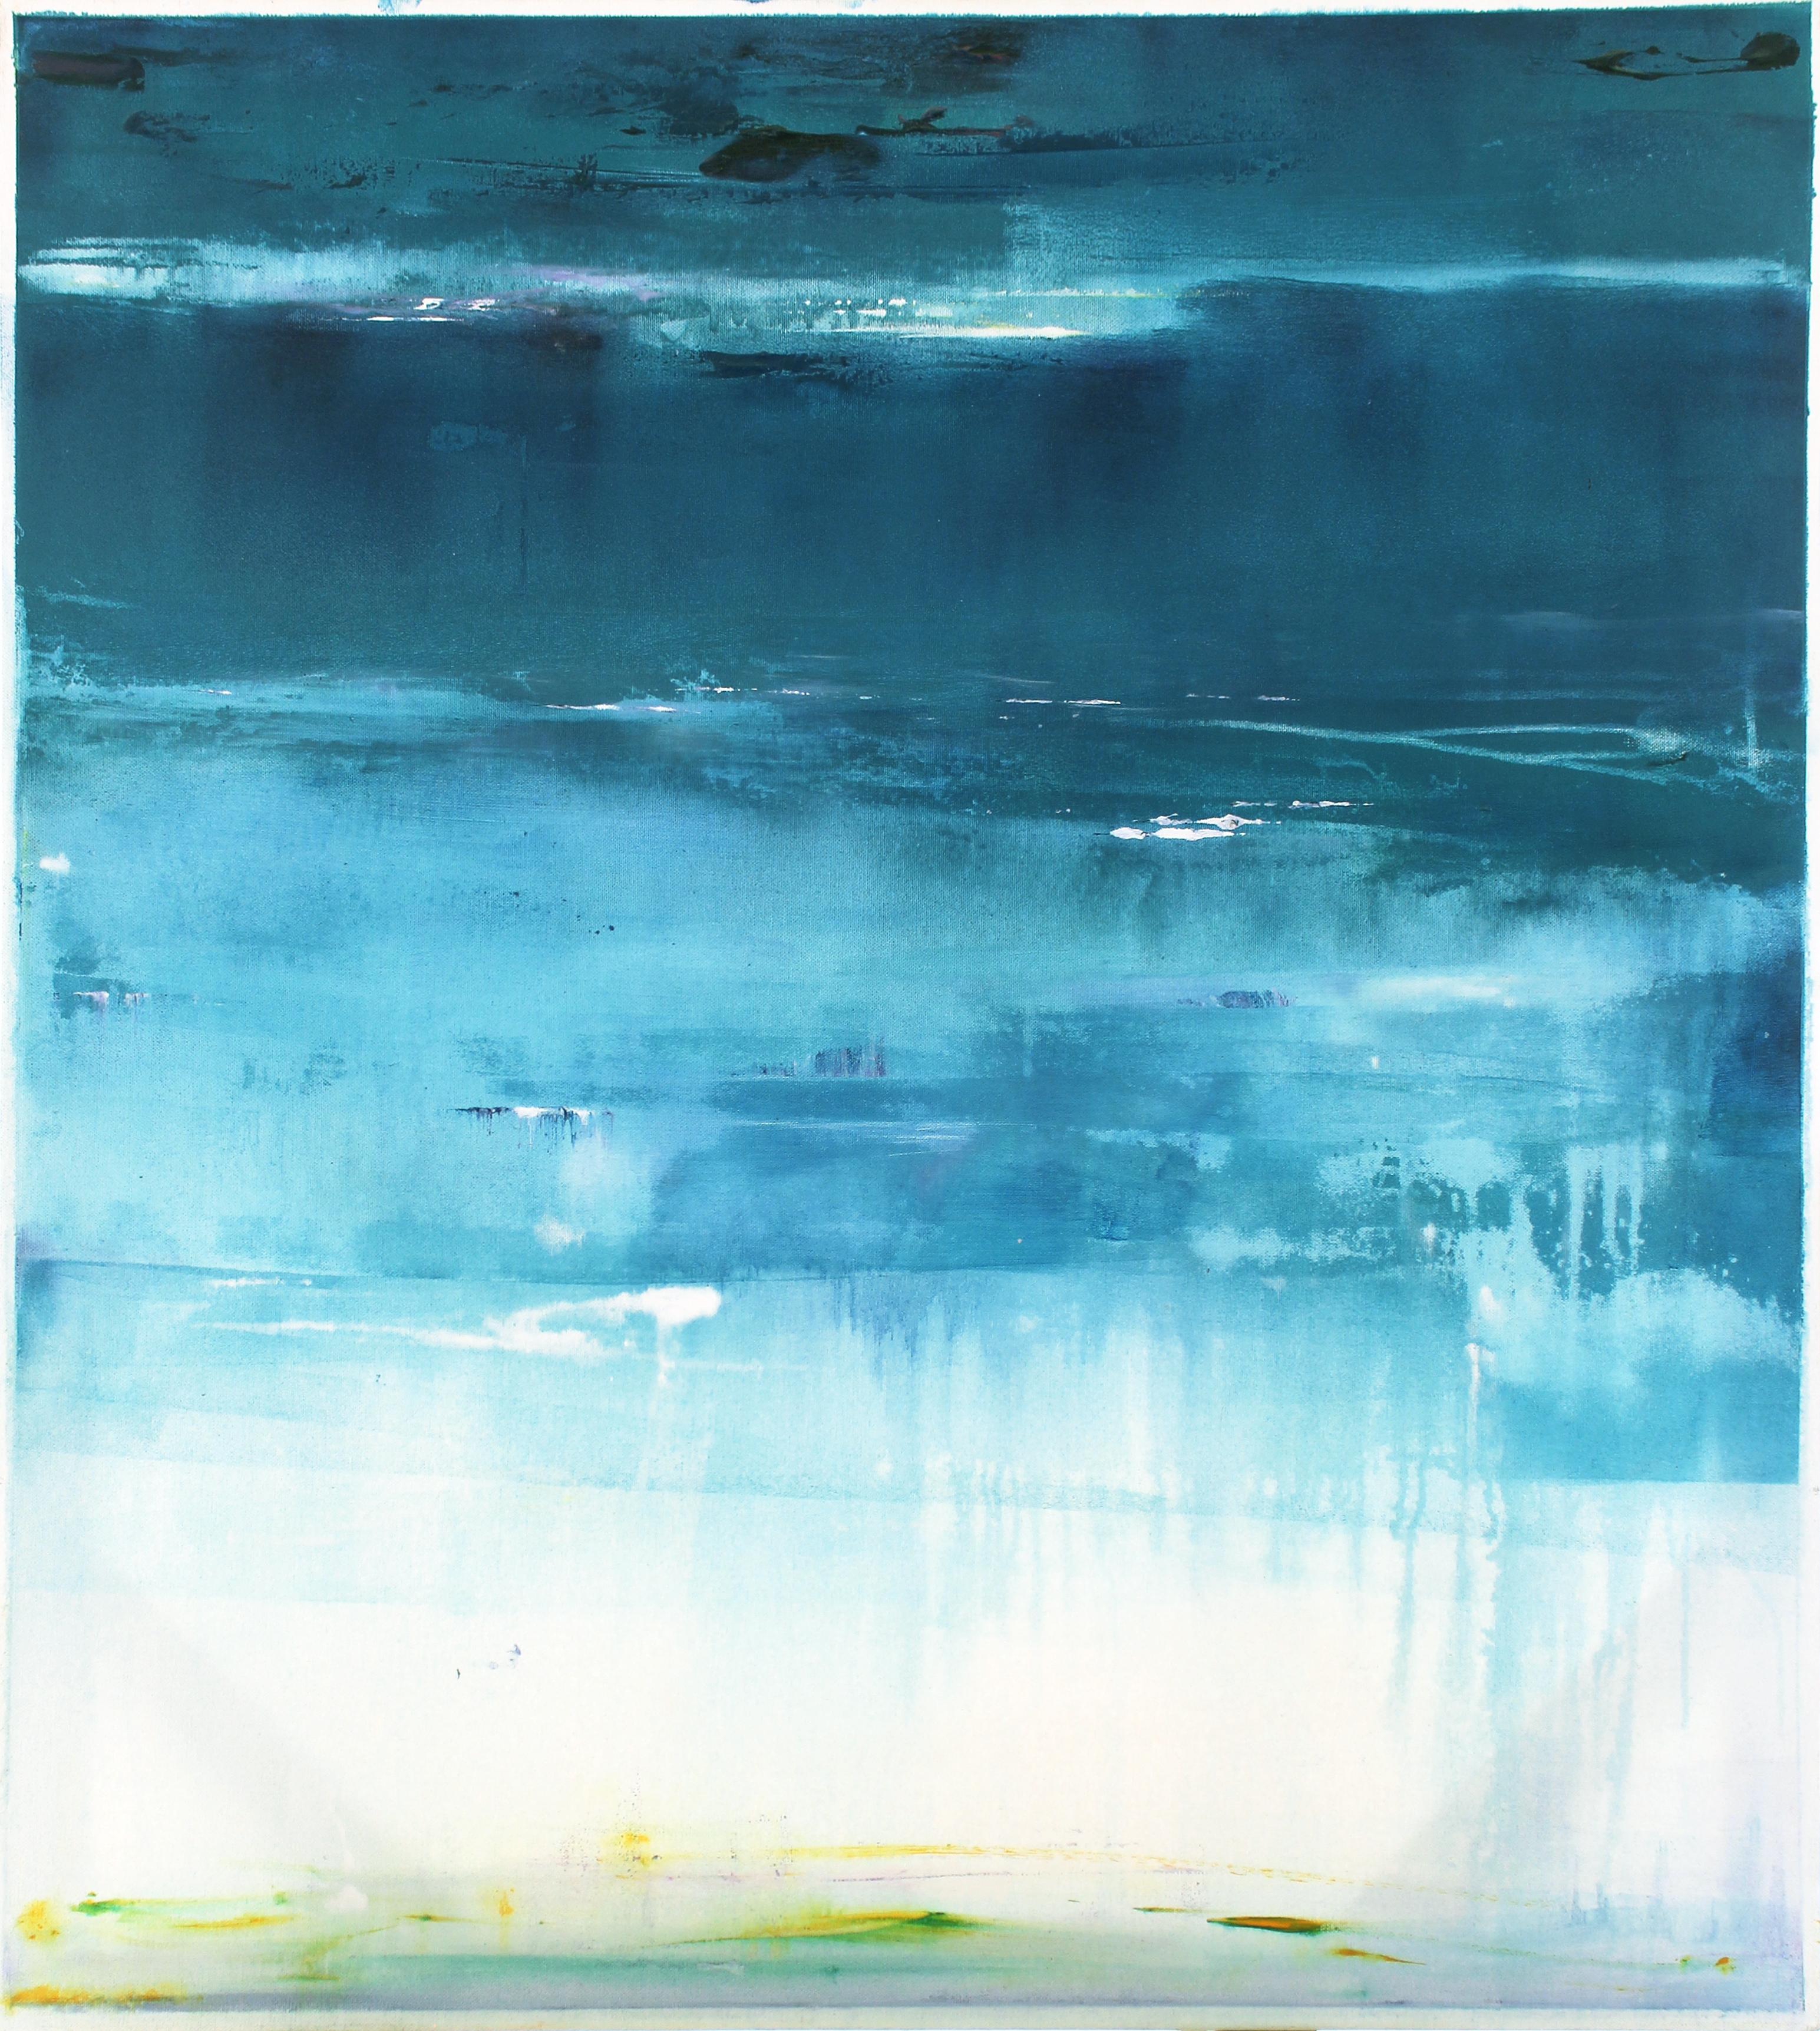 Binyamin Basteker
Der himmlische Ozean
Öl auf Leinwand
90 x 80 cm

